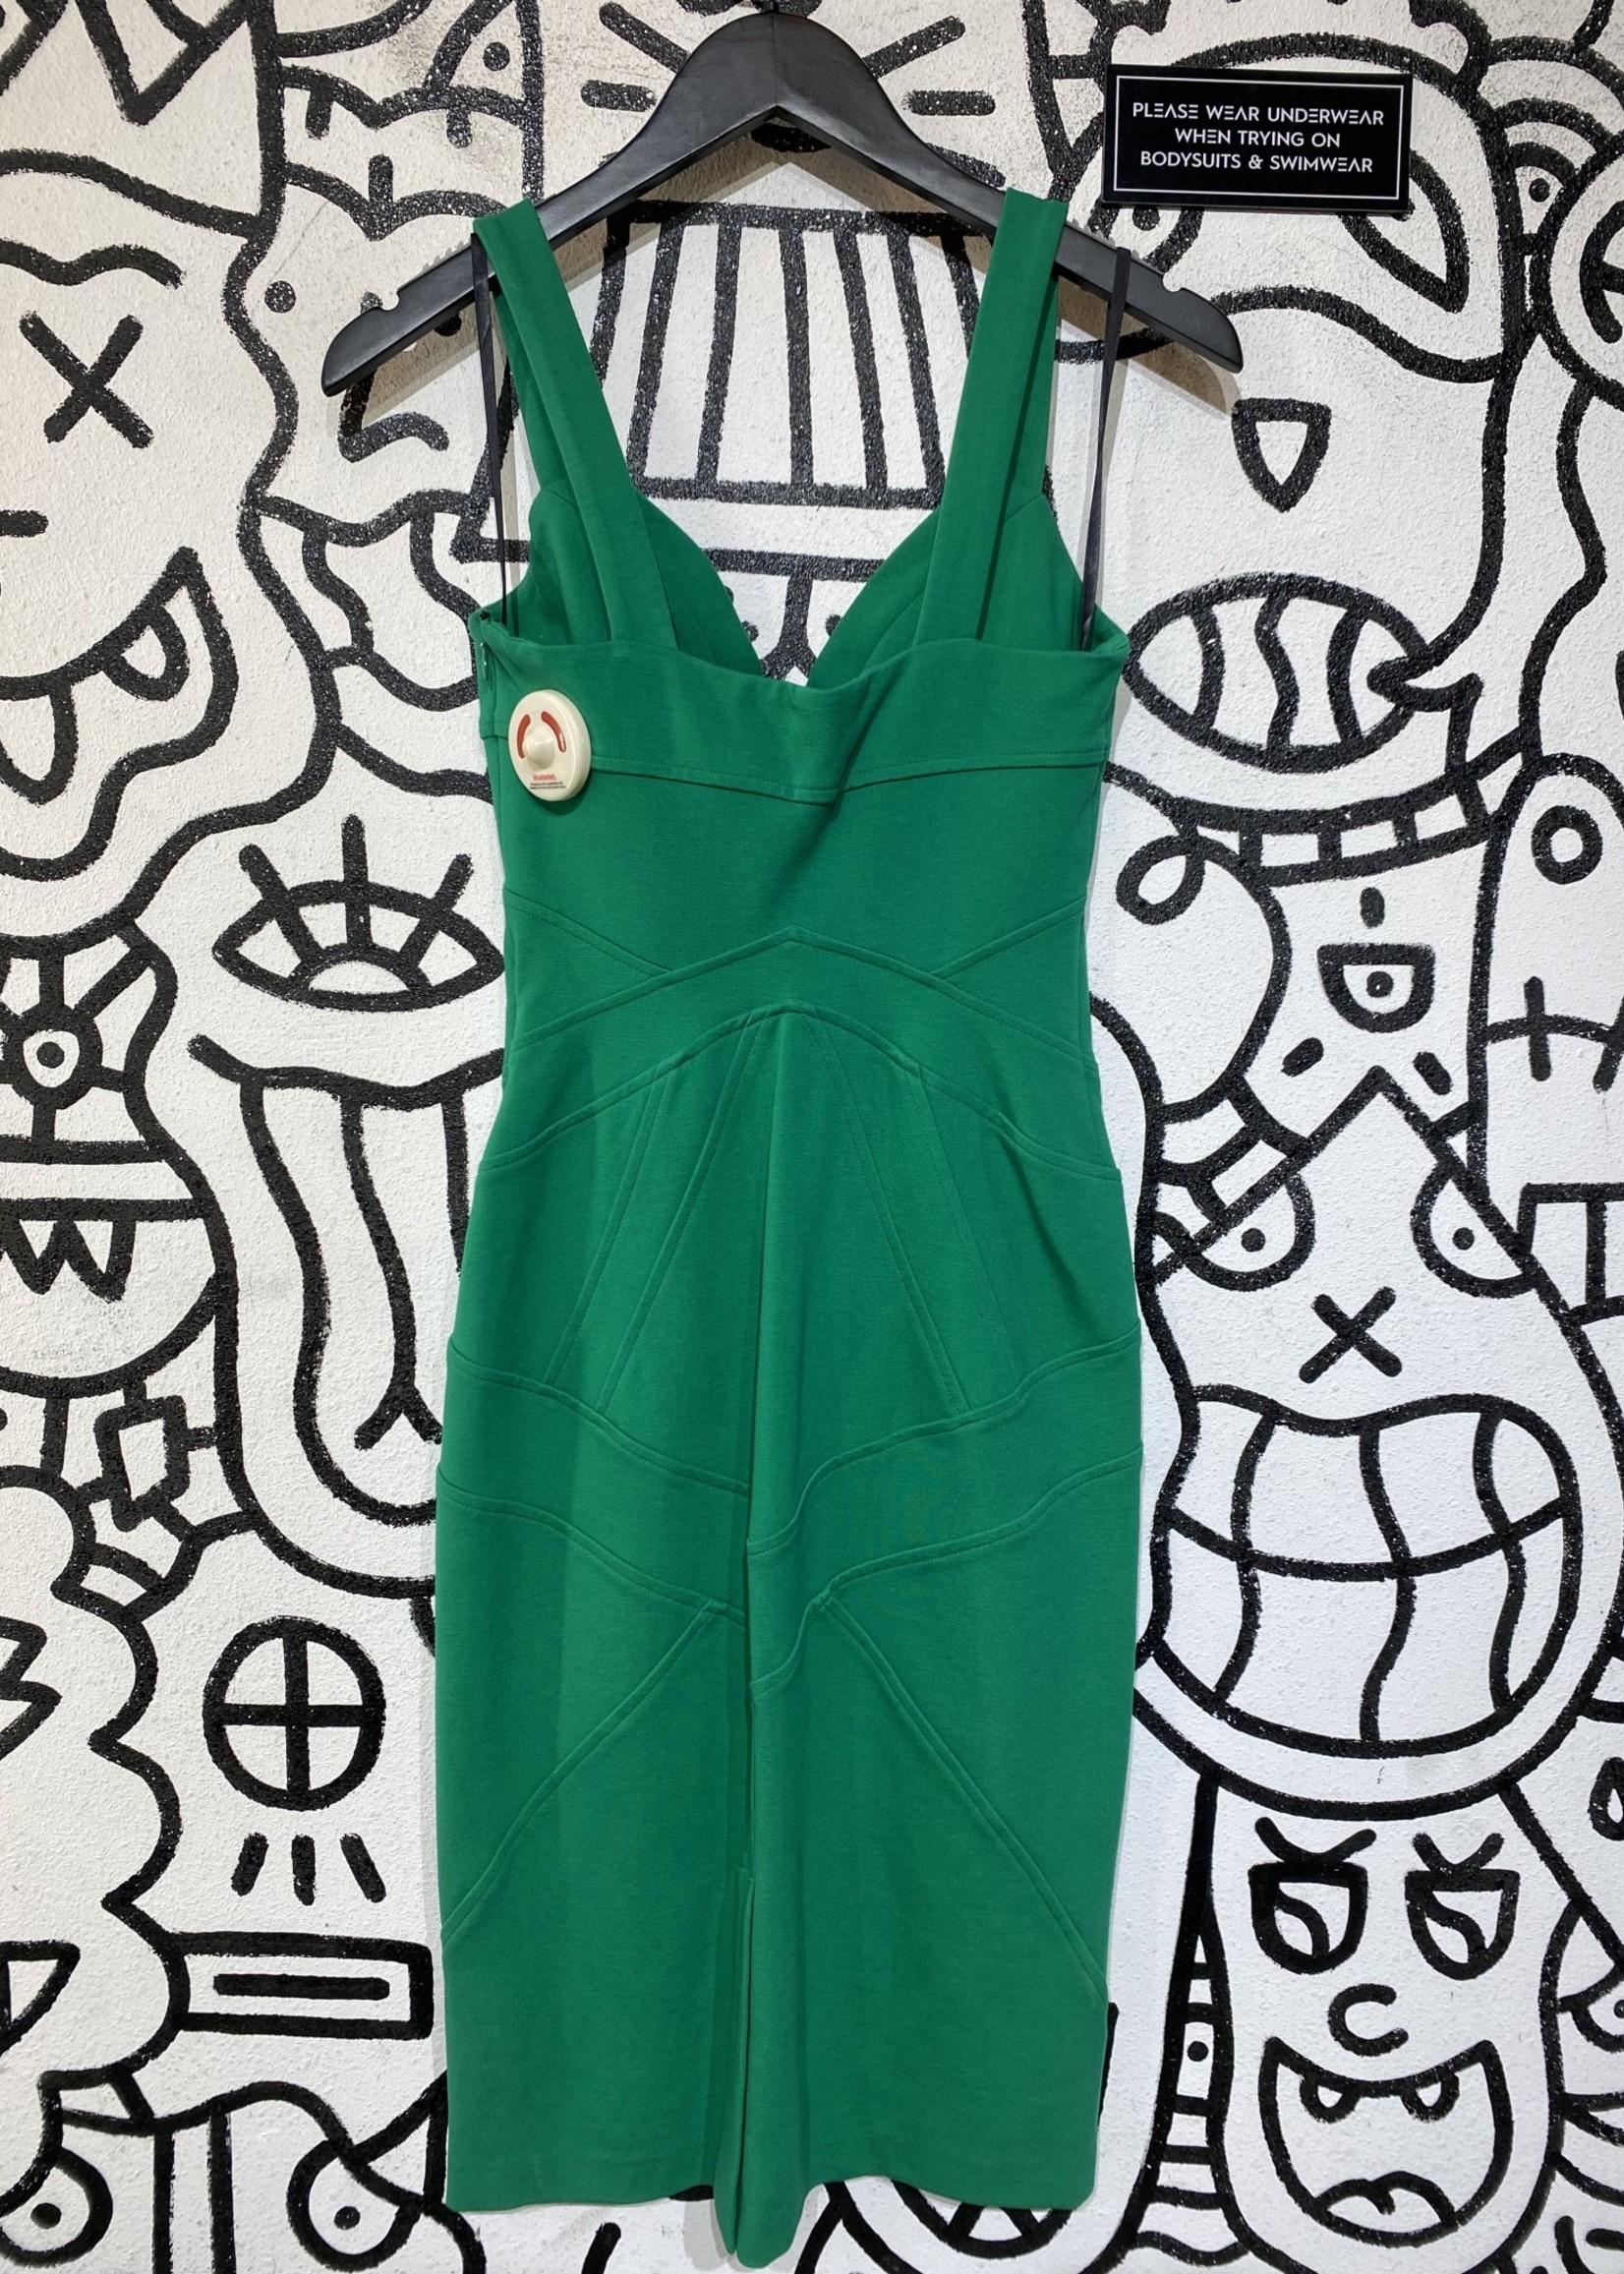 Diane Von Furstenberg Green Bodycon Dress 2/XS